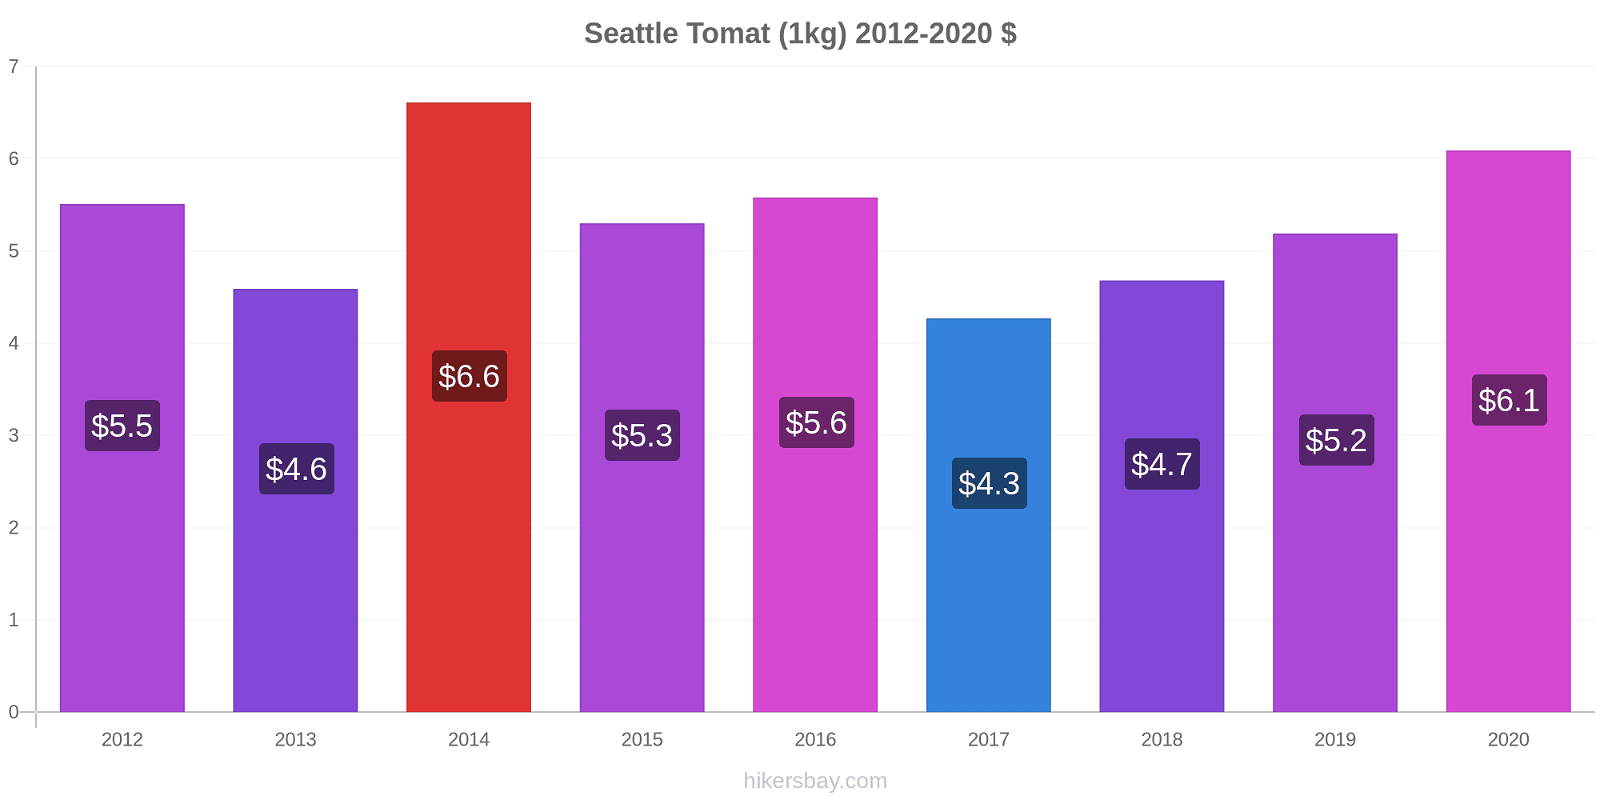 Seattle perubahan harga Tomat (1kg) hikersbay.com